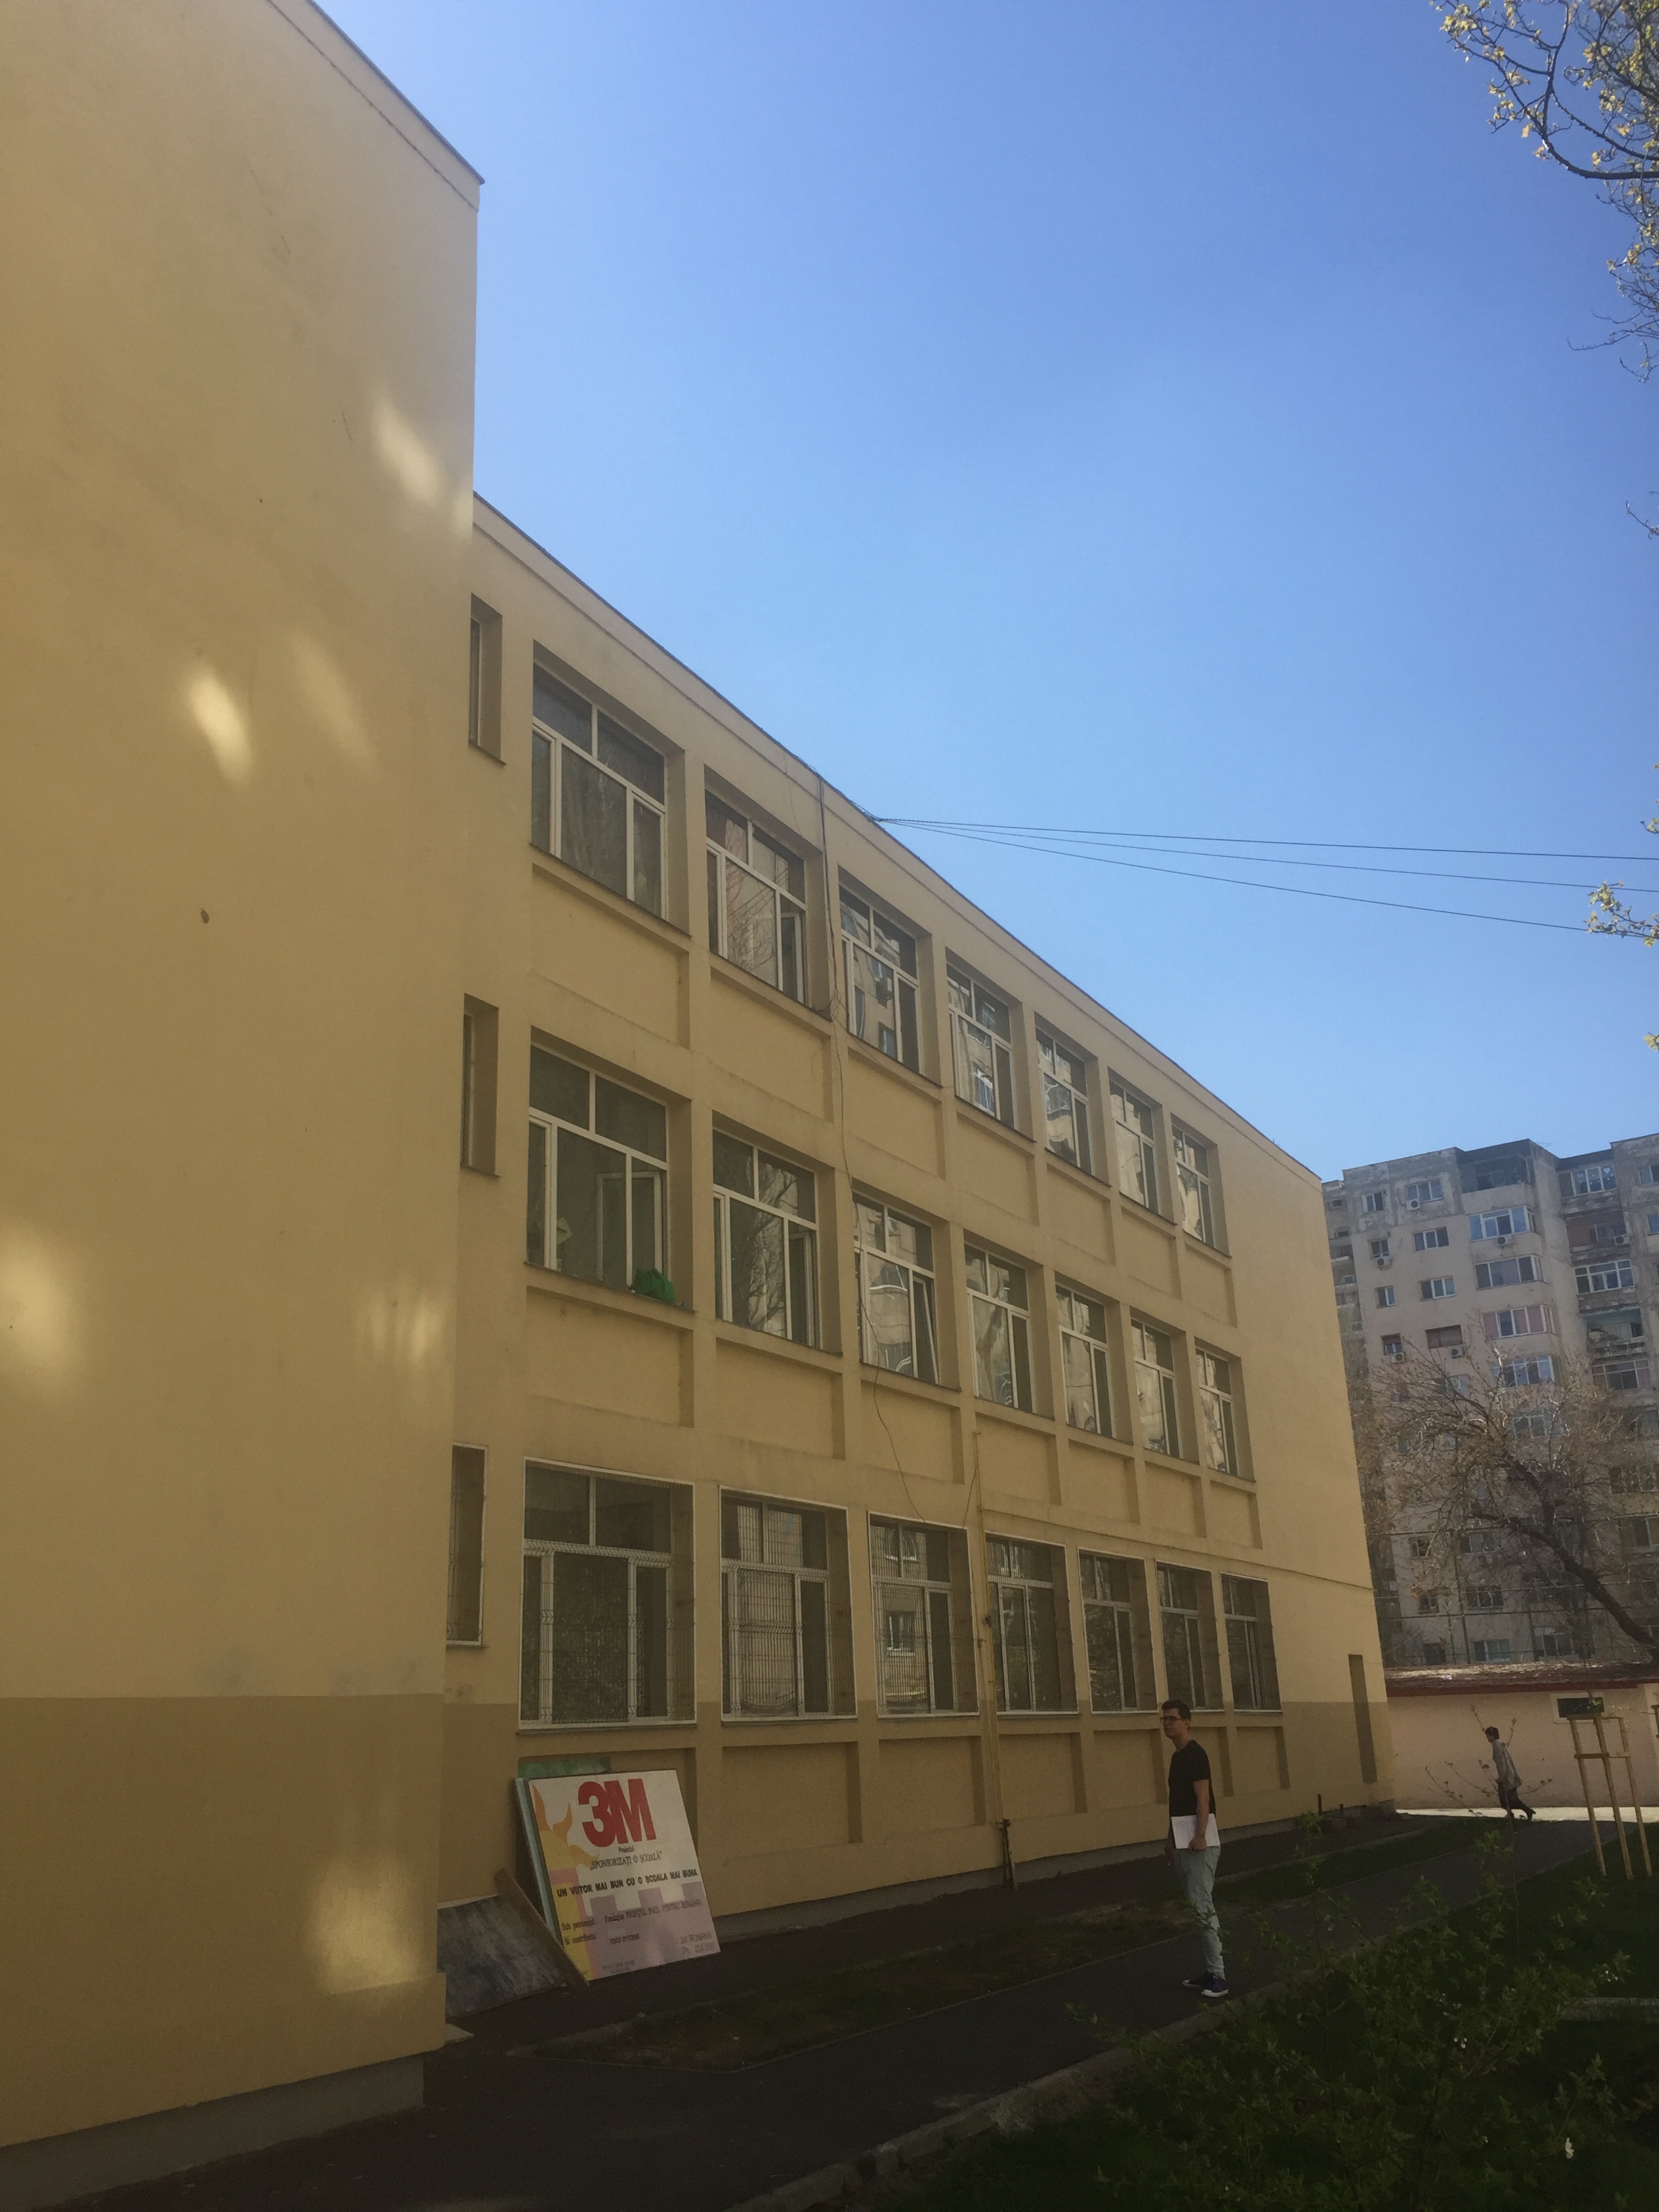 Școala „Adrian Păunescu" înainte